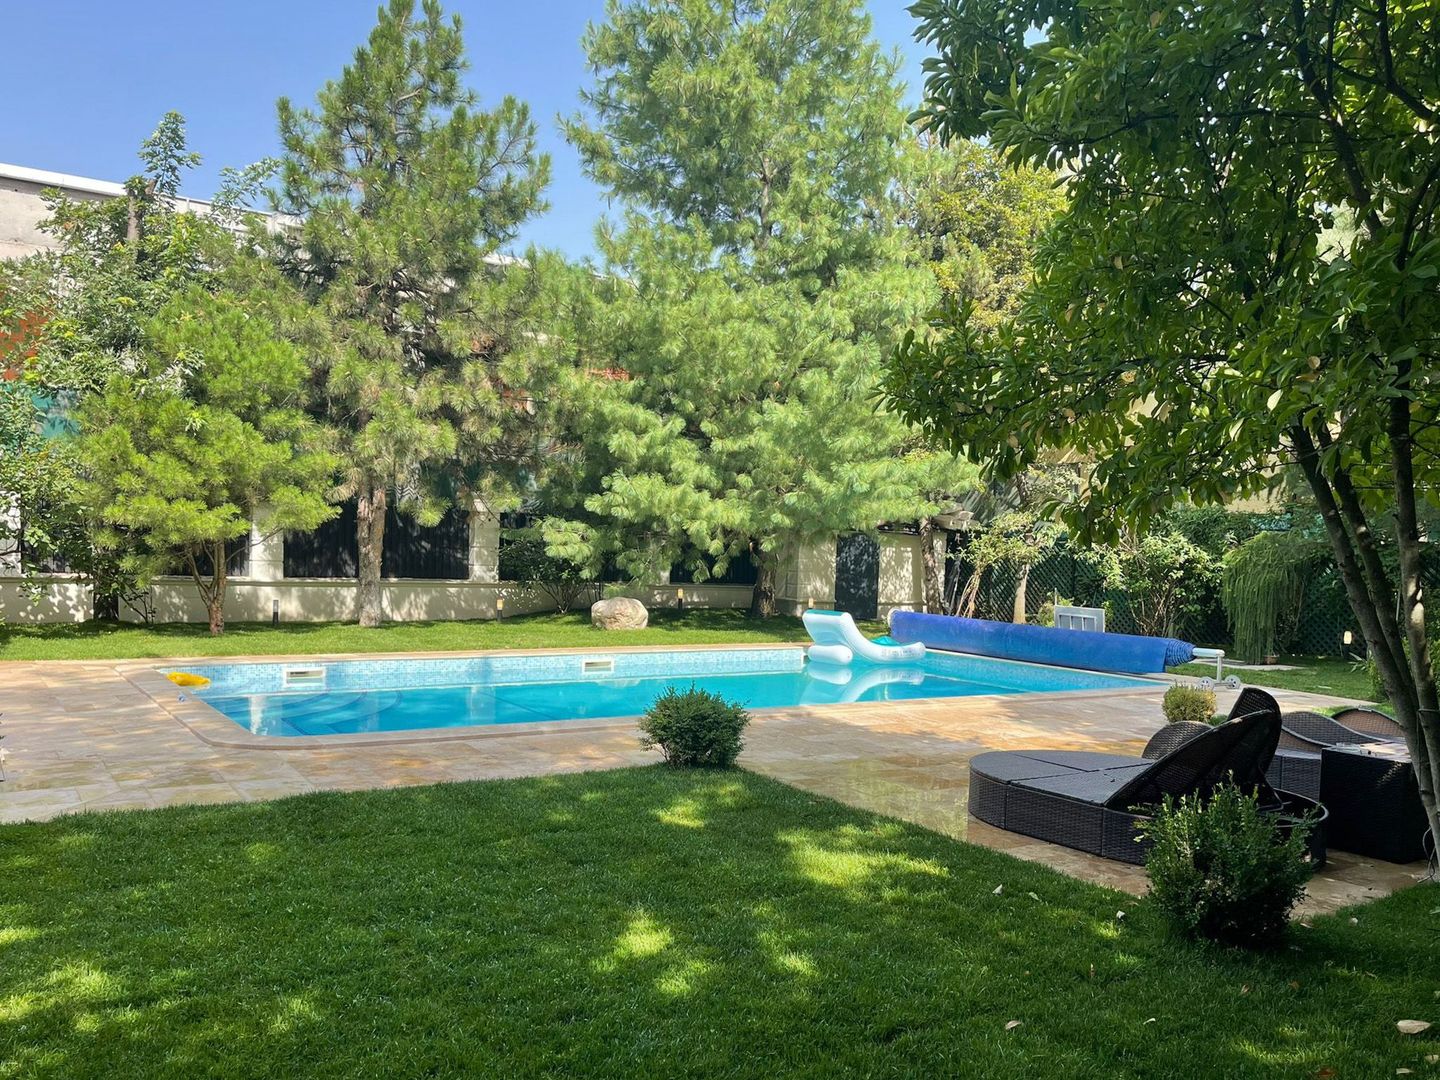 Eleganță în Vila de Excepție | Vila cu piscina încălzită și curte impresionanta